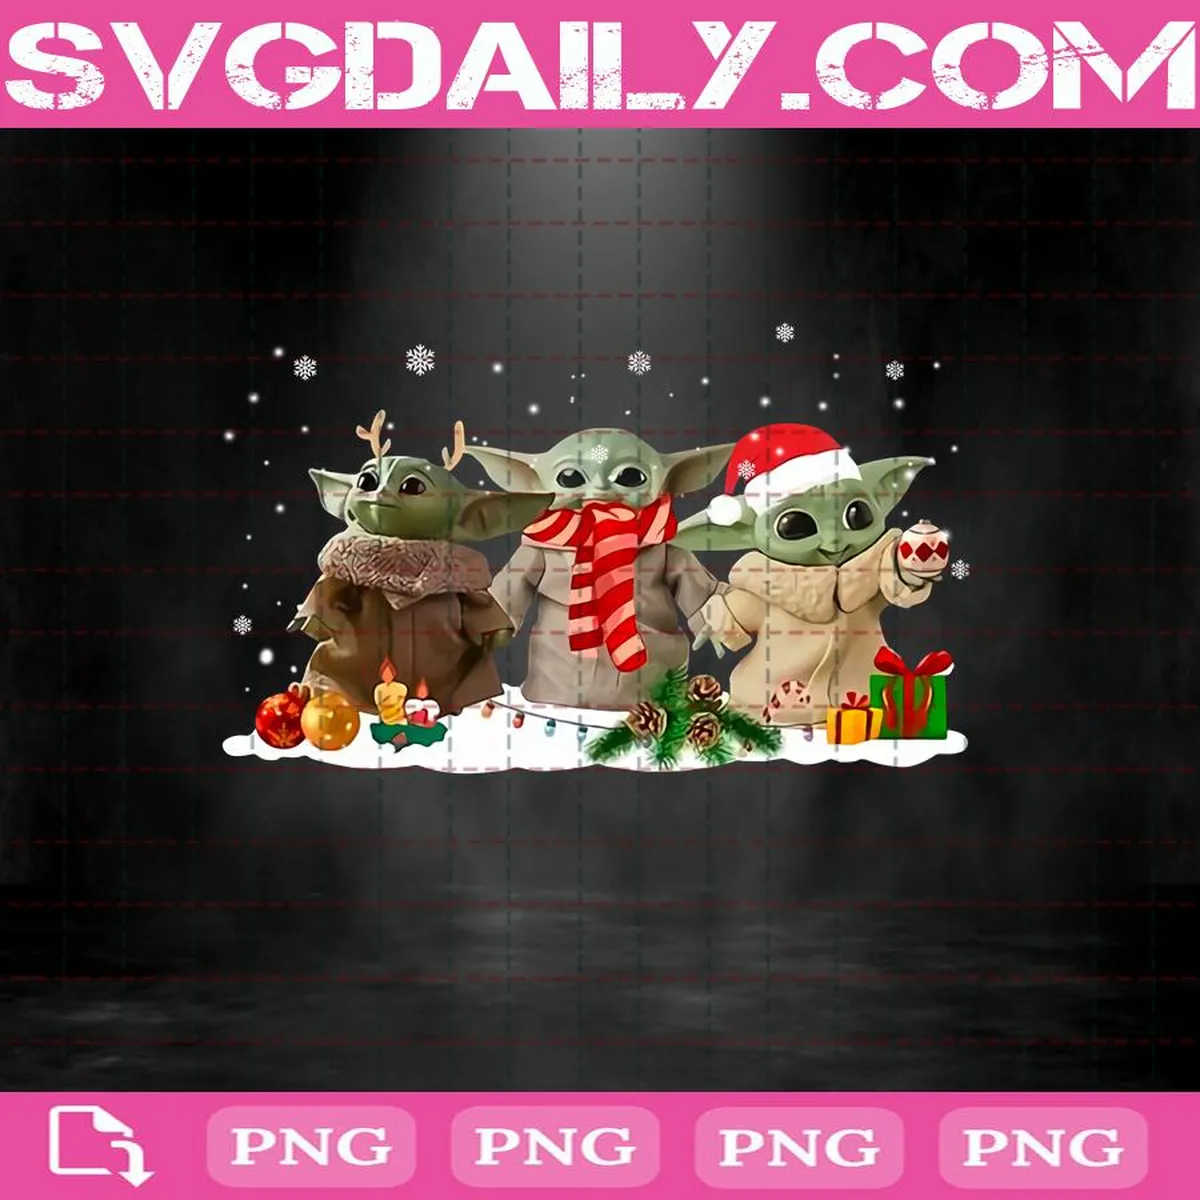 Baby Yoda Merry Christmas Png, Baby Yoda Santa Christmas Png, Baby Yoda Png, Merry Christmas Png, Digital File